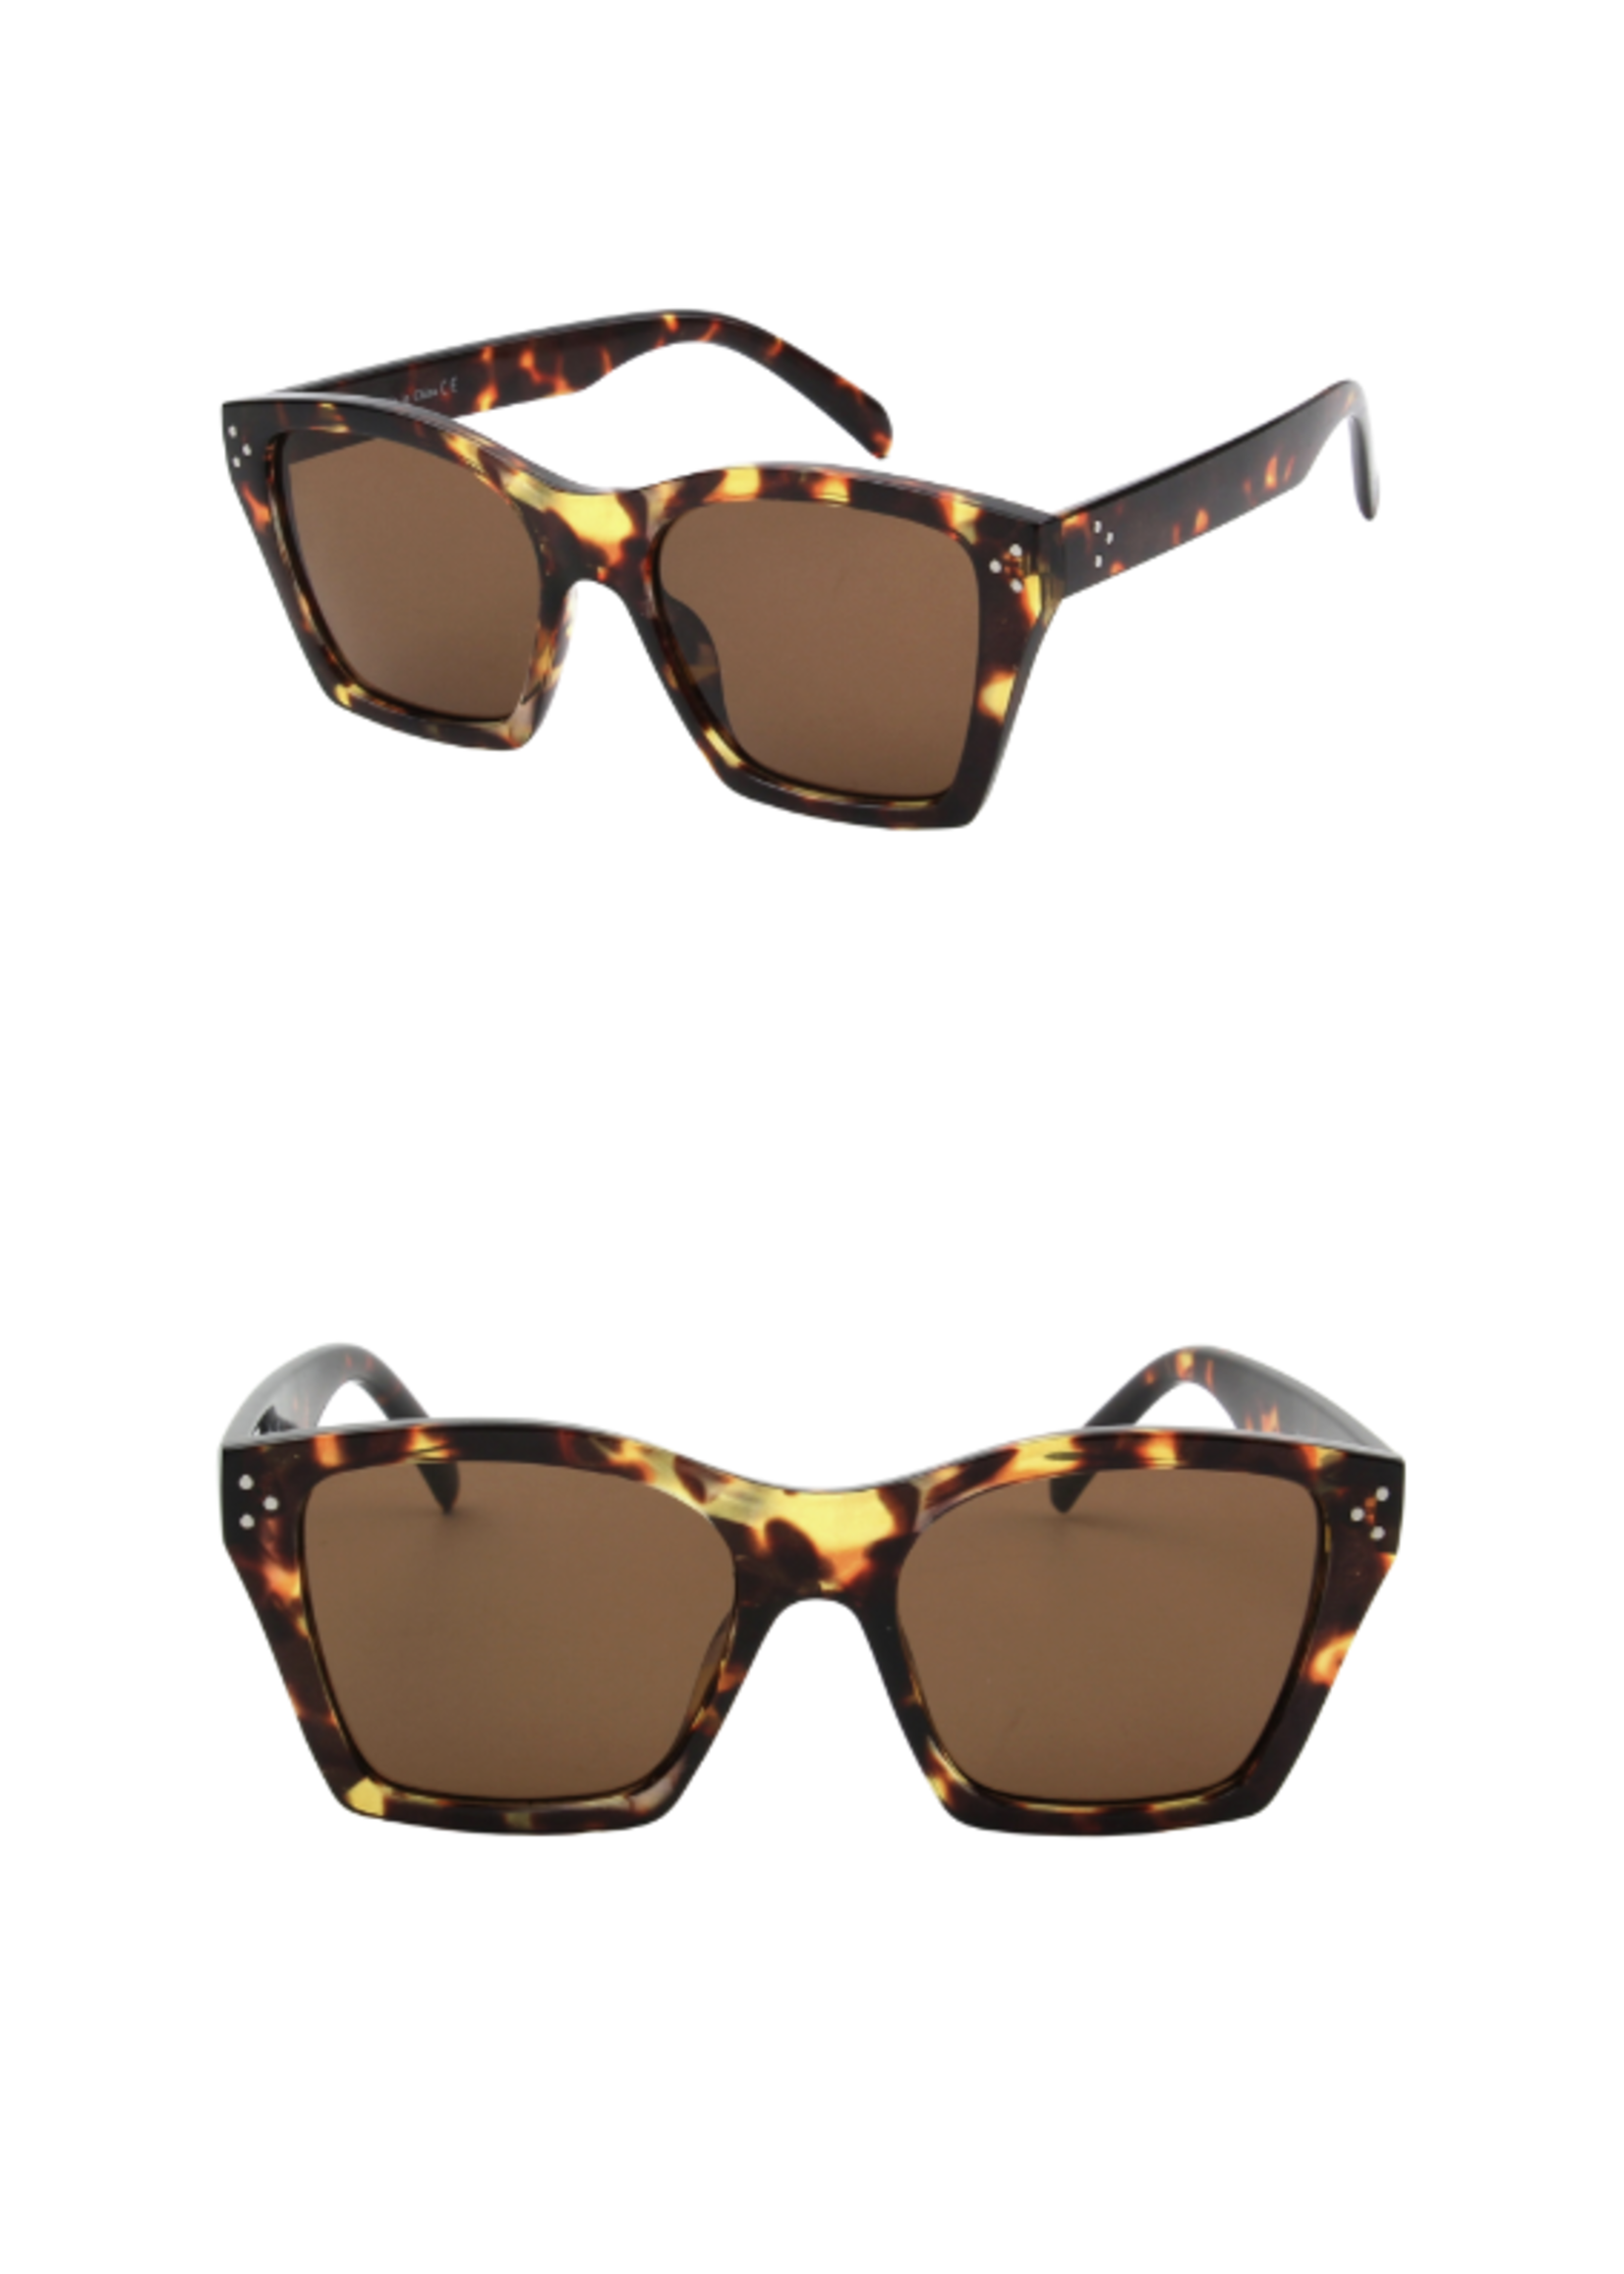 August Avenue Eyewear Stockholm Sunglasses | Tortoise